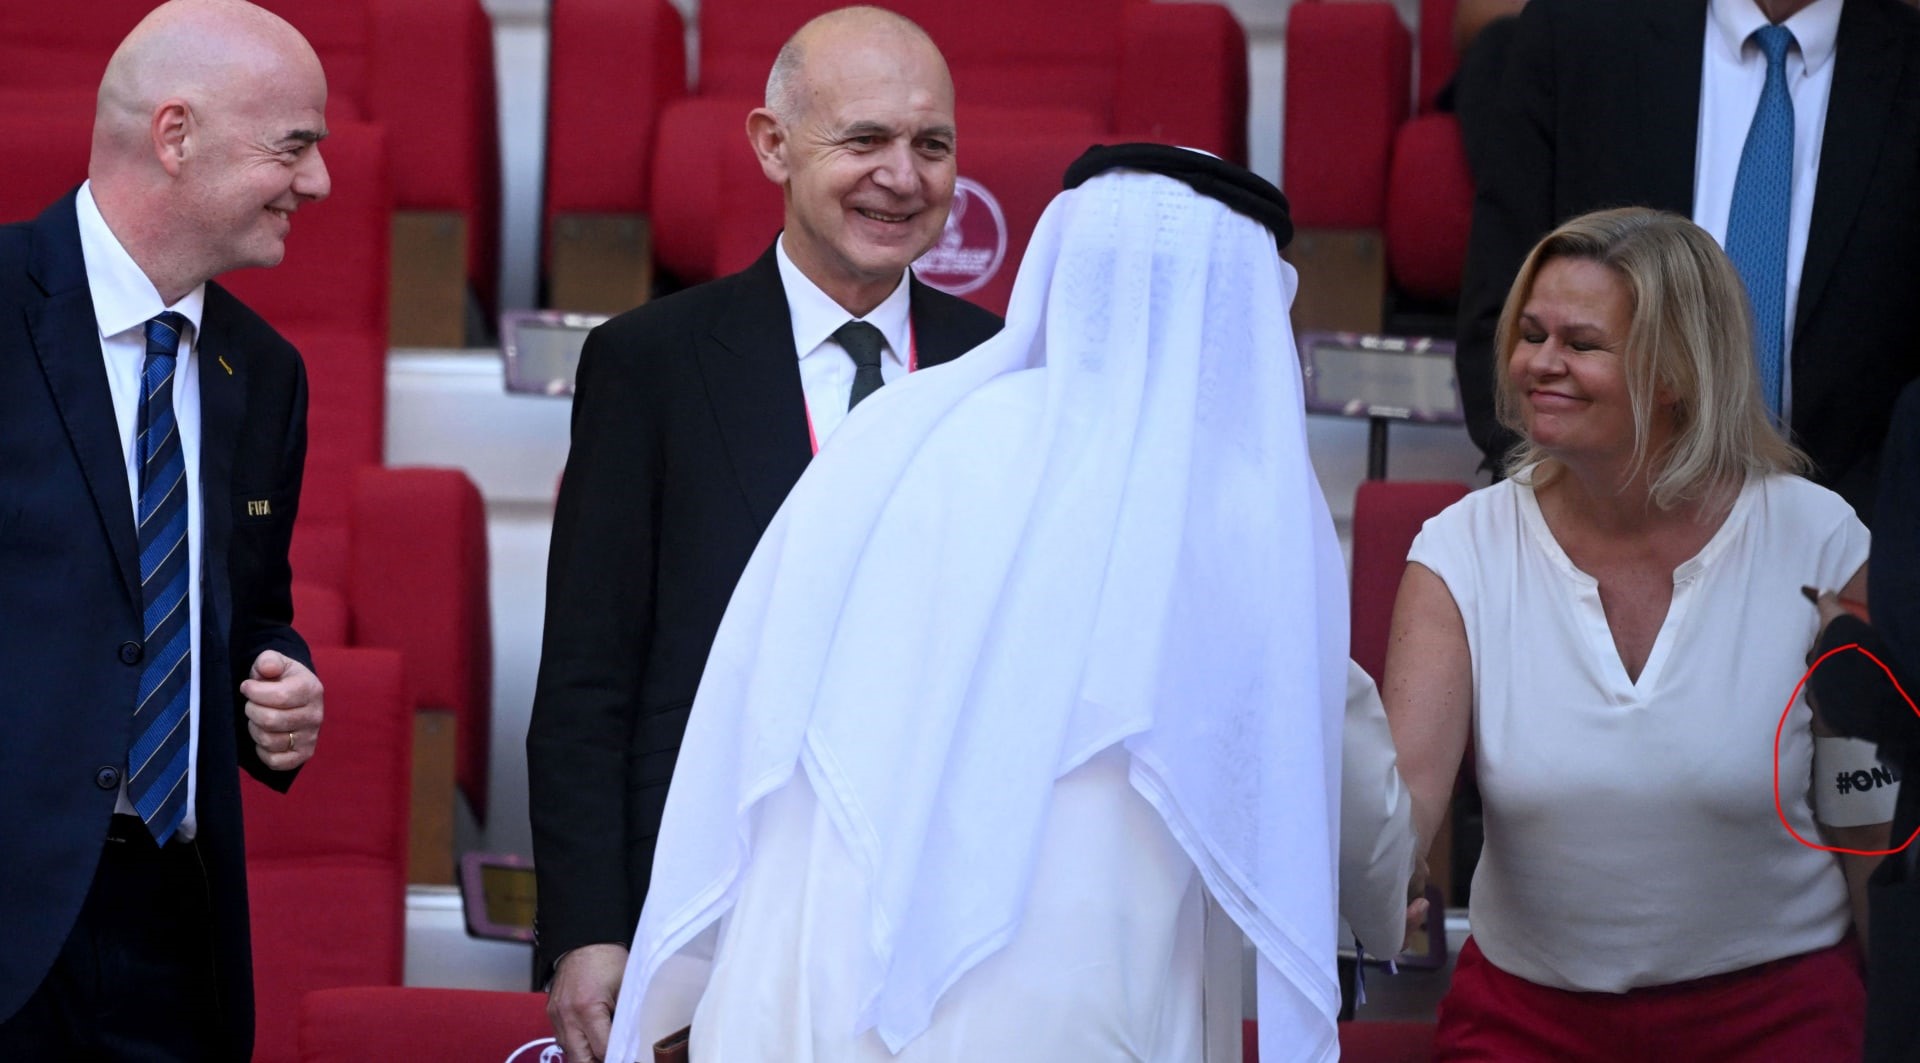  ارتداء وزيرة داخلية ألمانيا شارة "حب واحدة : تحايل على ضوابط قطر 